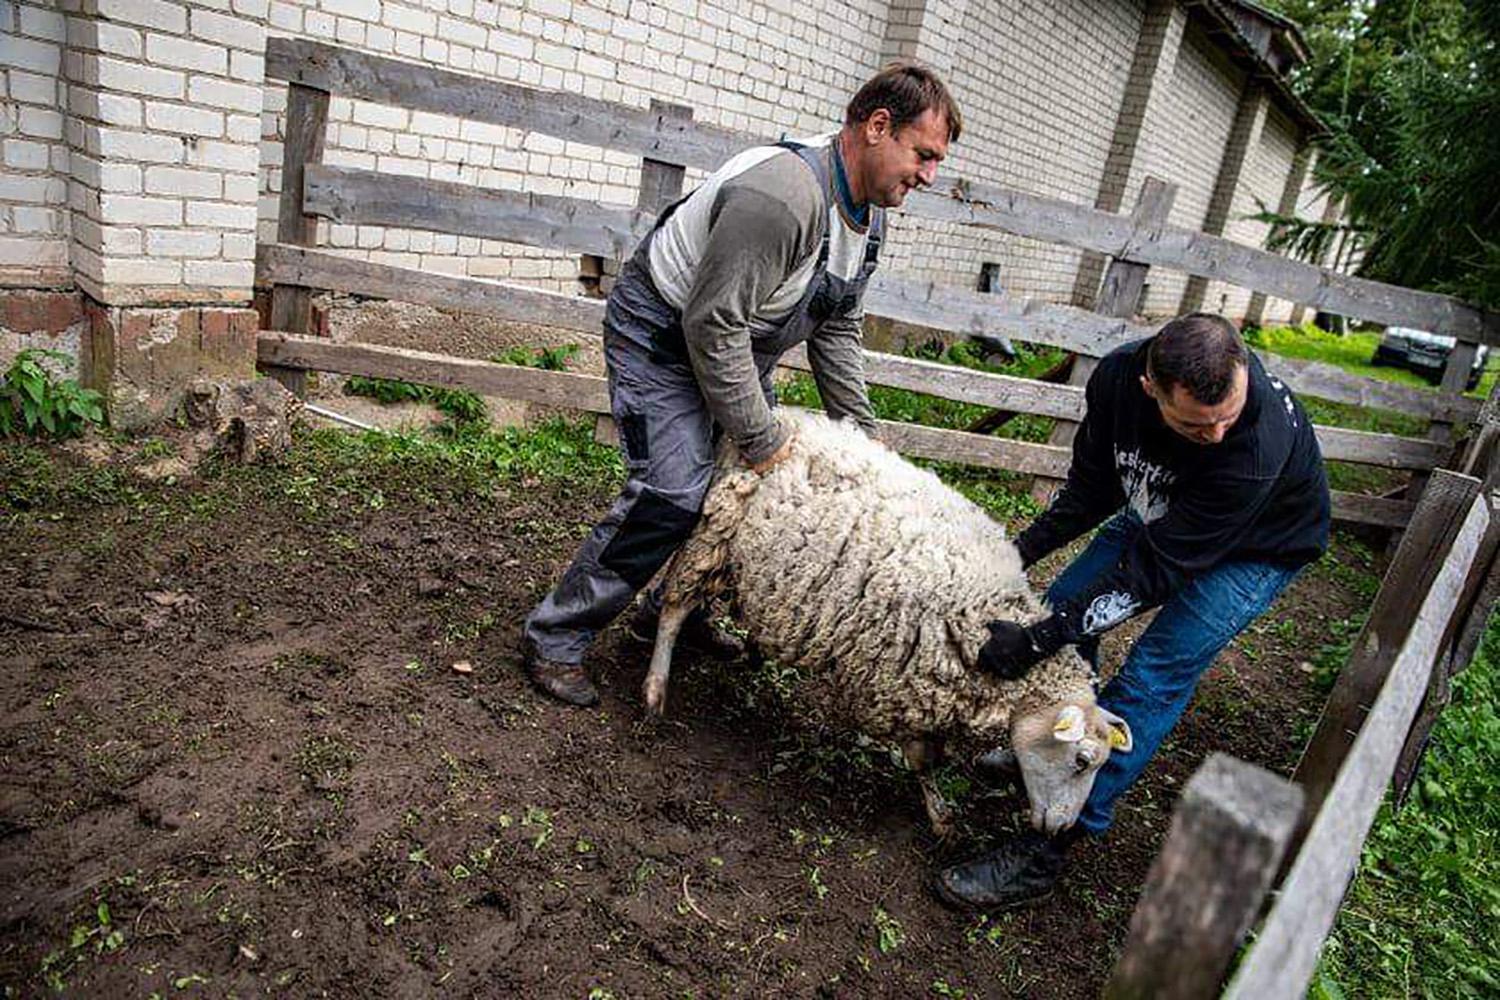 Vaitkuškio dvare vyko avių kirpimo šventė / Avių kirpimas – daugeliui nematytas reginys.  Organizatorių nuotr.